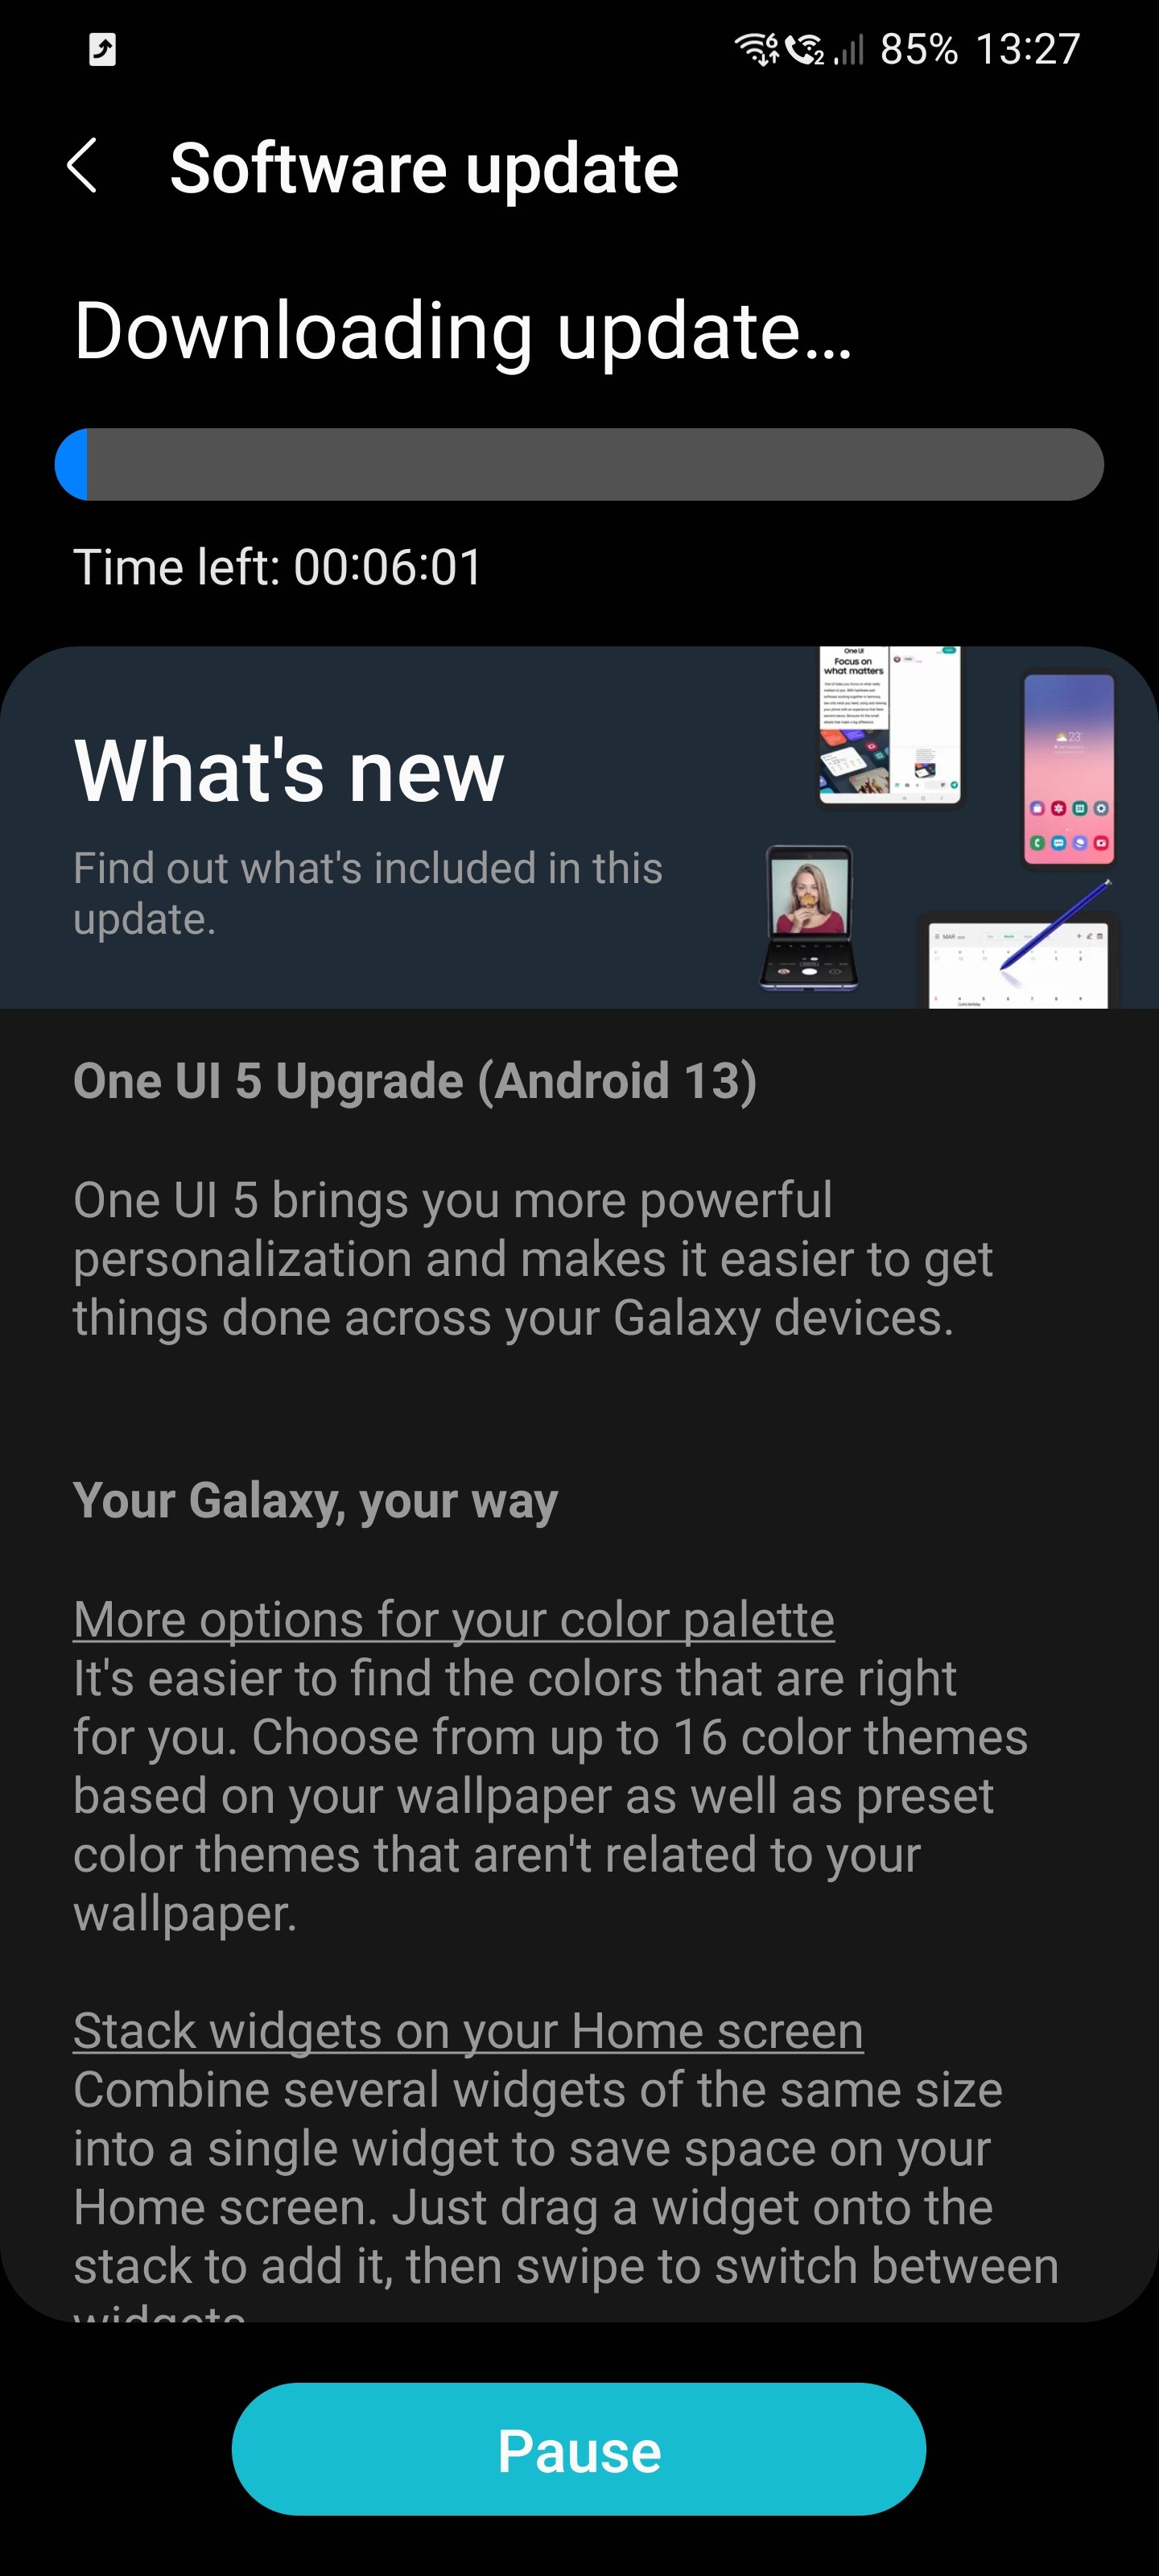 Samsung Galaxy S21 One UI 5.0 Beta Update Changelog